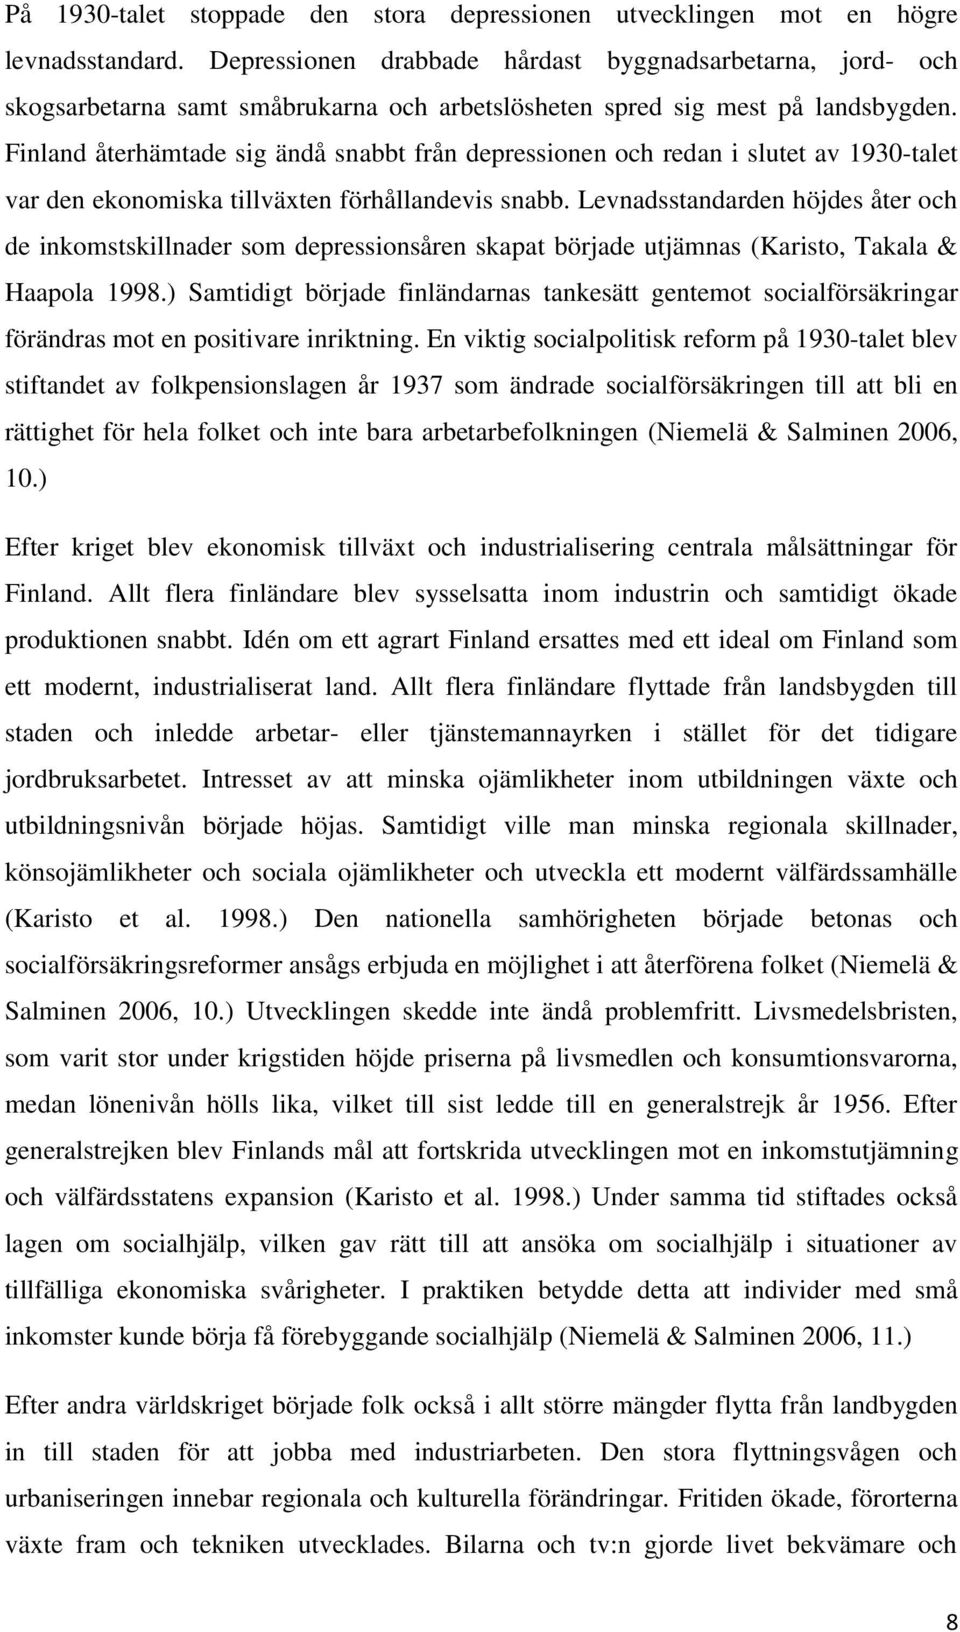 Finland återhämtade sig ändå snabbt från depressionen och redan i slutet av 1930-talet var den ekonomiska tillväxten förhållandevis snabb.